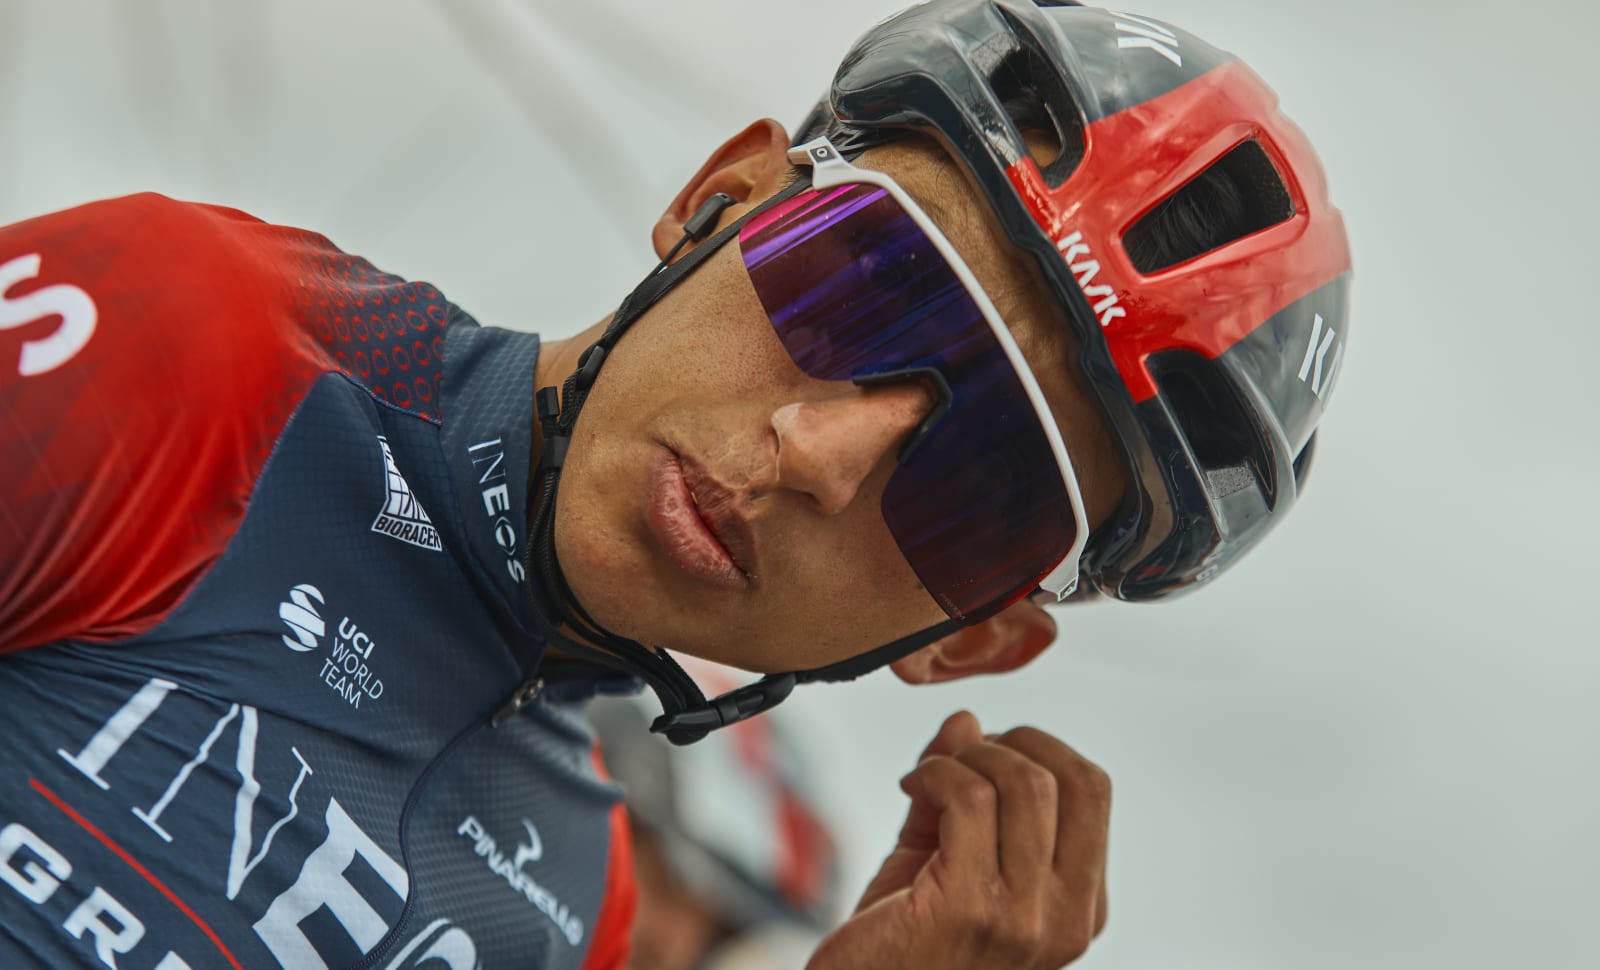 Uno de los grandes objetivos de Egan Bernal para el 2022 es ganar la Vuelta a España, con lo cual alcanzaría la ‘triple corona’. Foto: cortesía INEOS Grenadiers